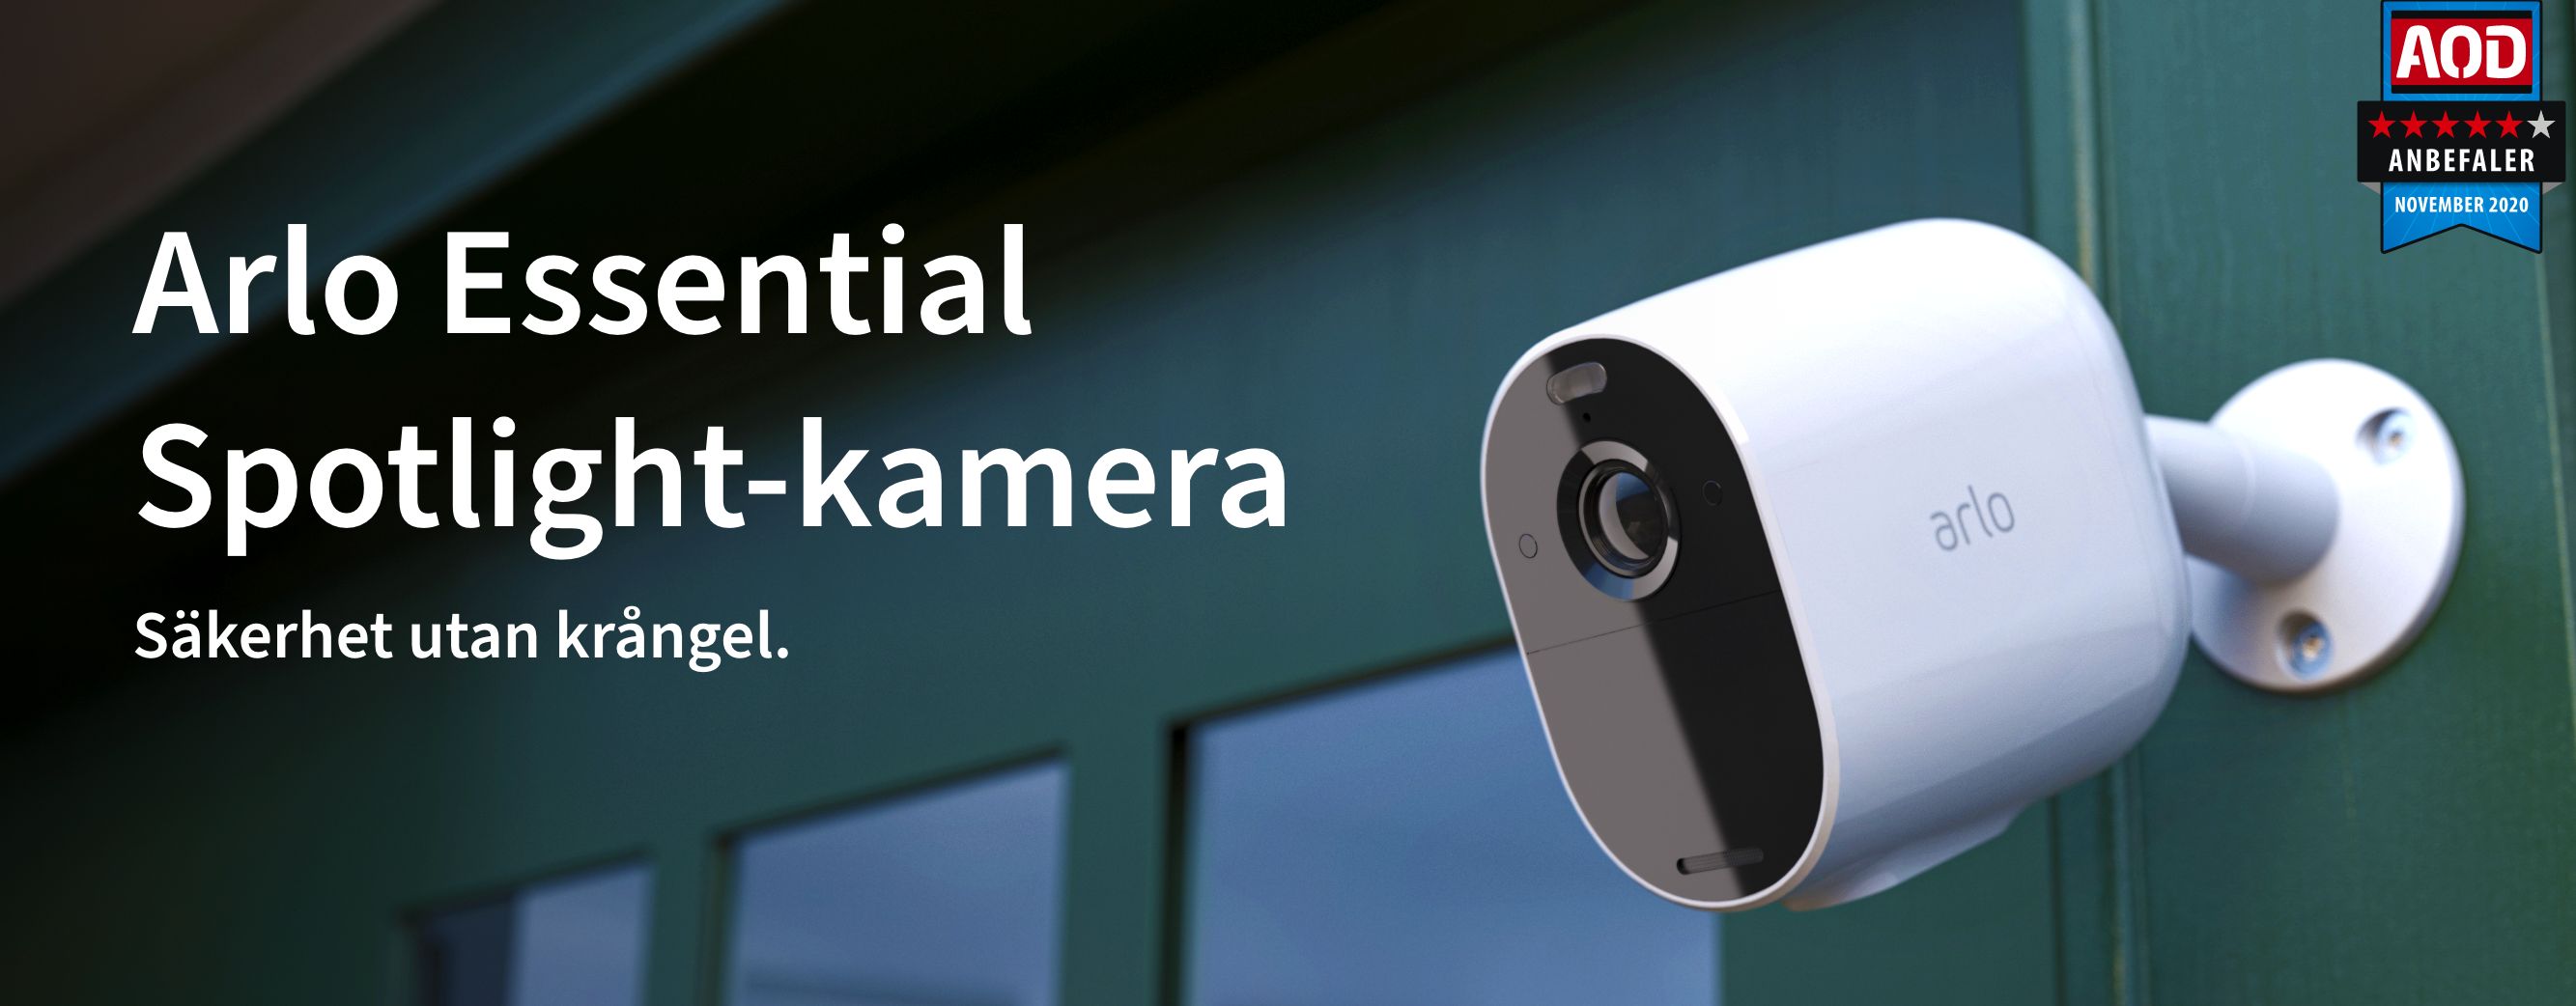 Arlo Essential Spotlight-kamera fäst vid en dörr, vinnare av AOD-priset 2021